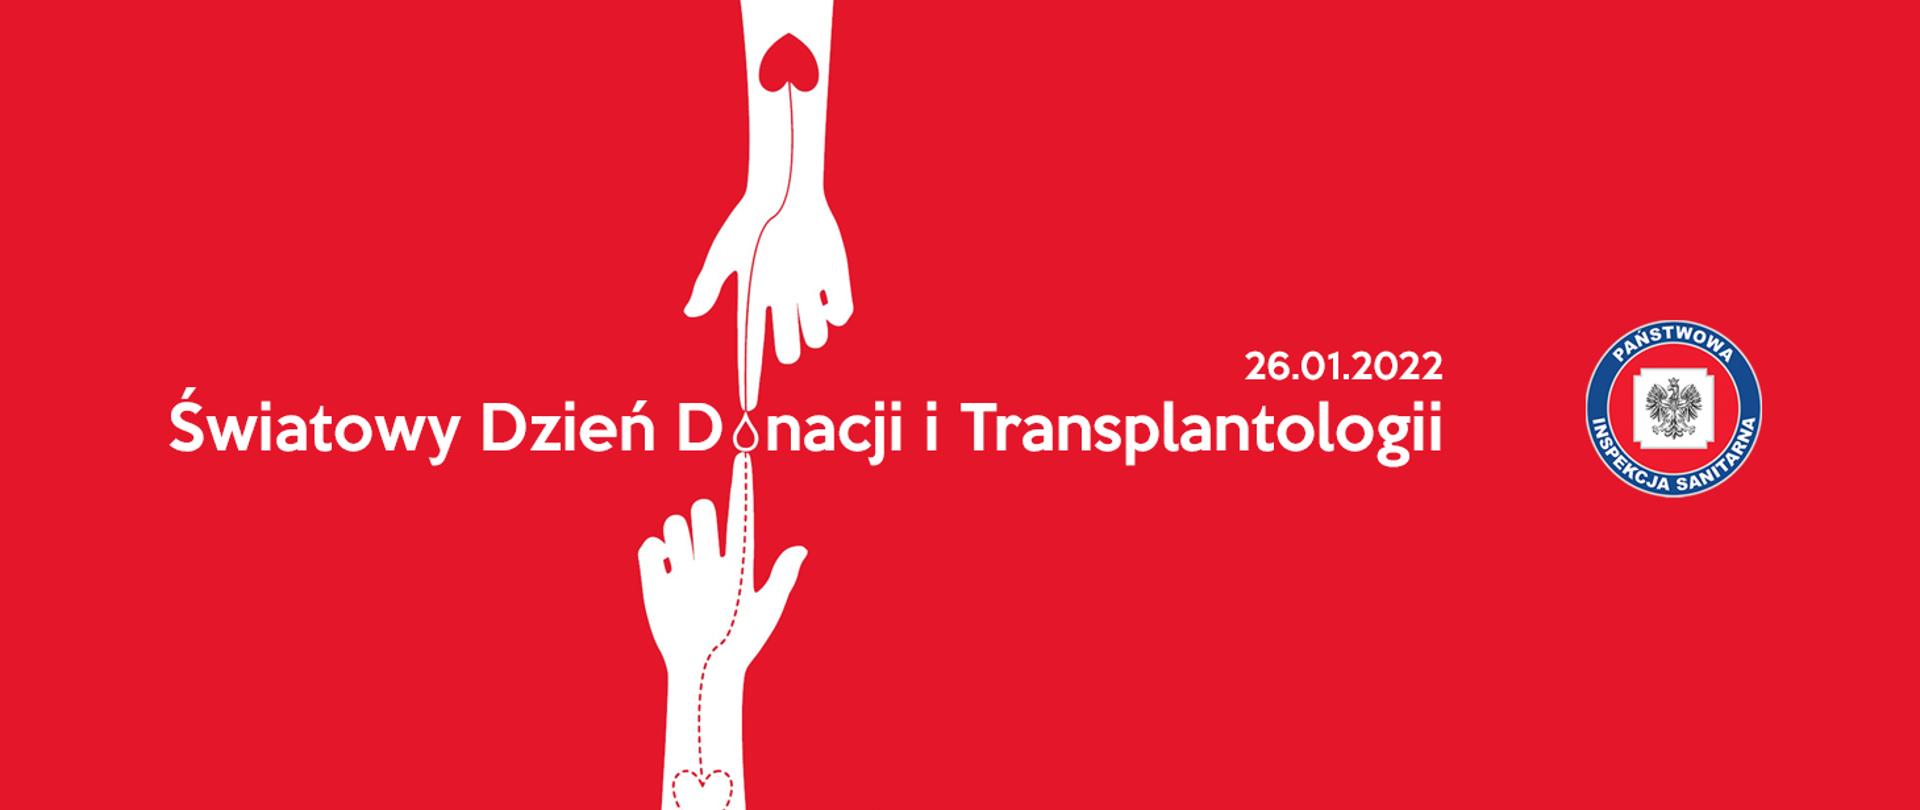 Światowy Dzień Donacji i Transplantologii